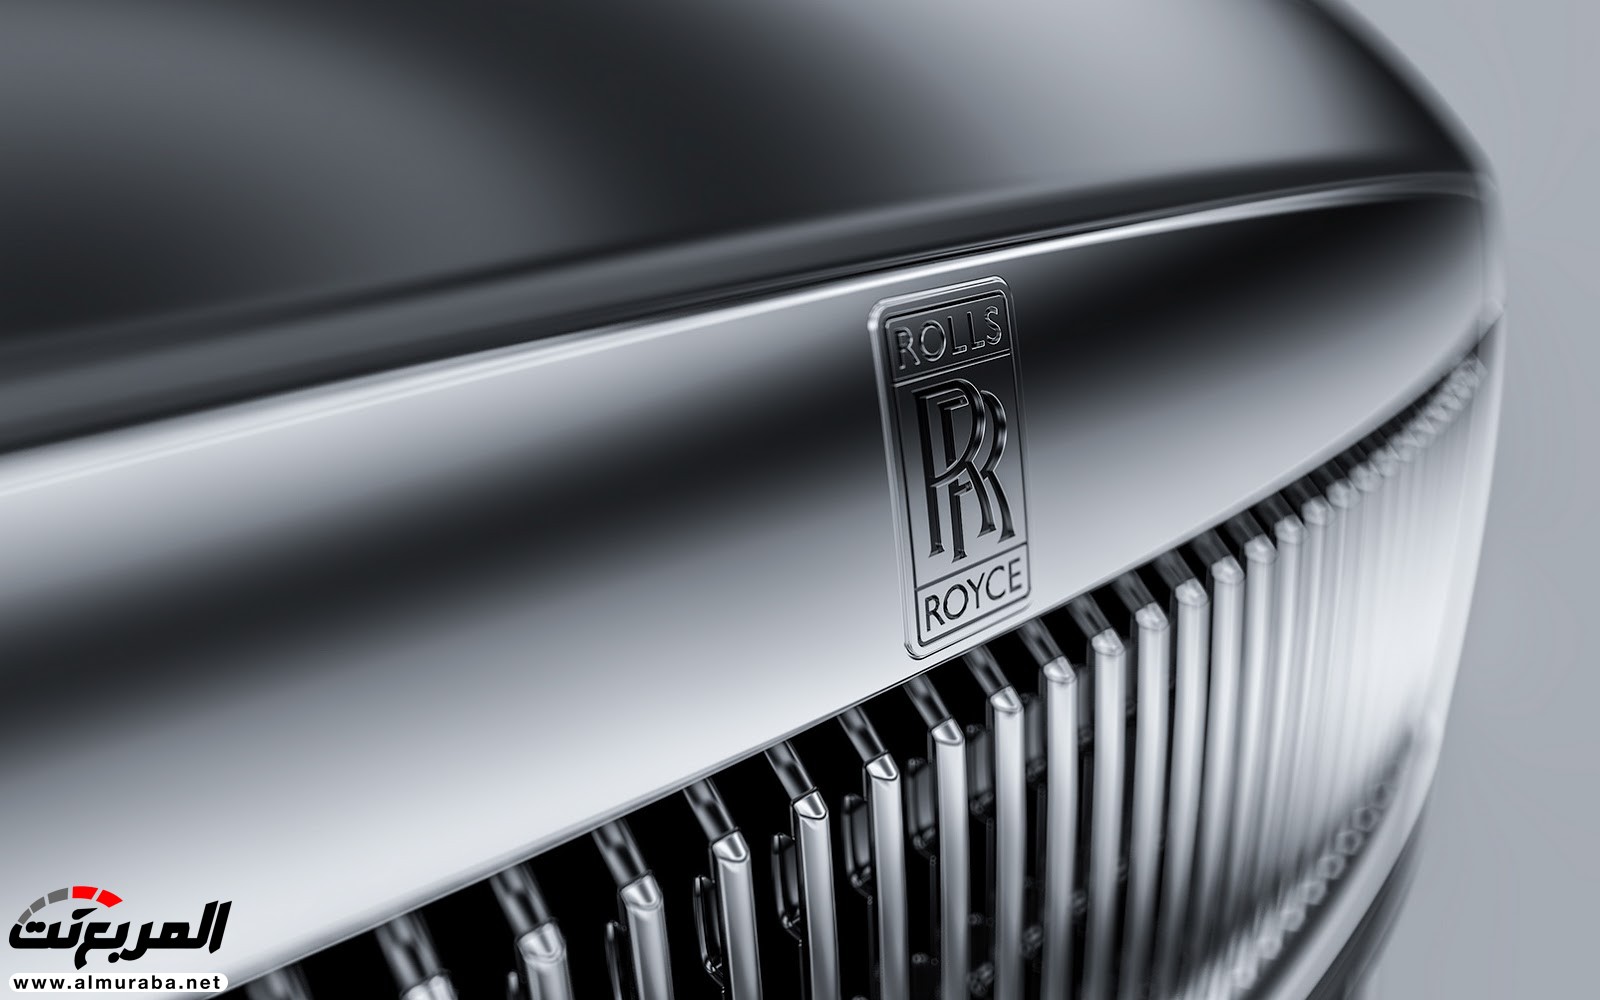 "صور افتراضية" لما يمكن أن تبدو عليه "رولز رويس" رايث كوبيه 2020 Rolls-Royce Wraith Coupe 72